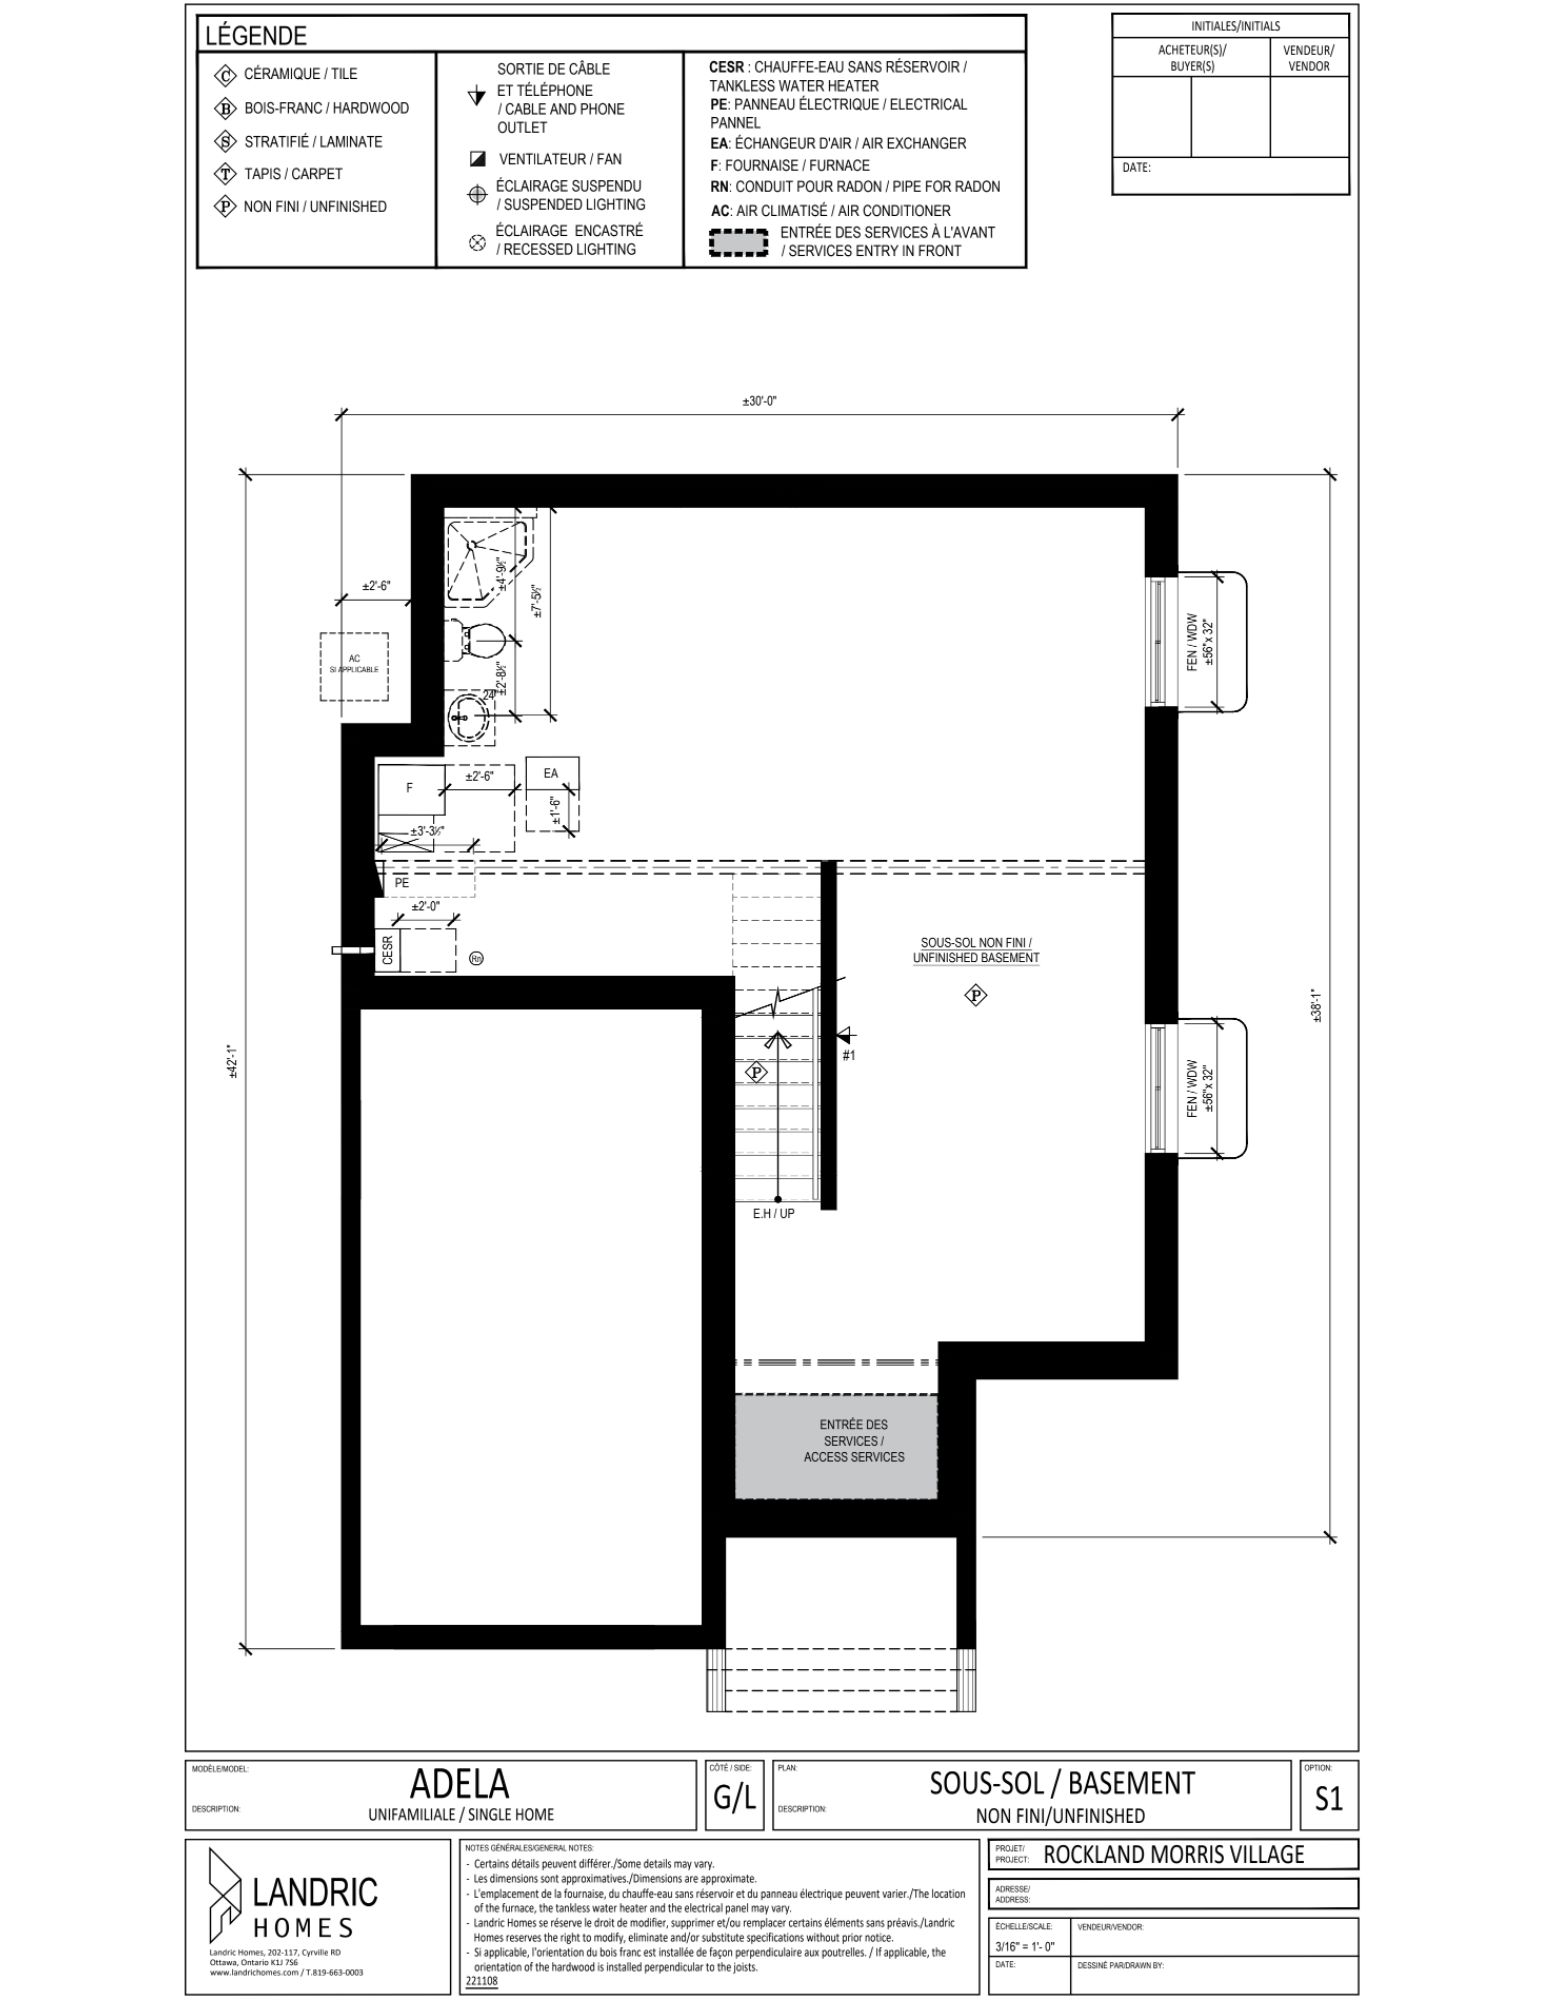 Beaumont, Morris Village floor plans (17)